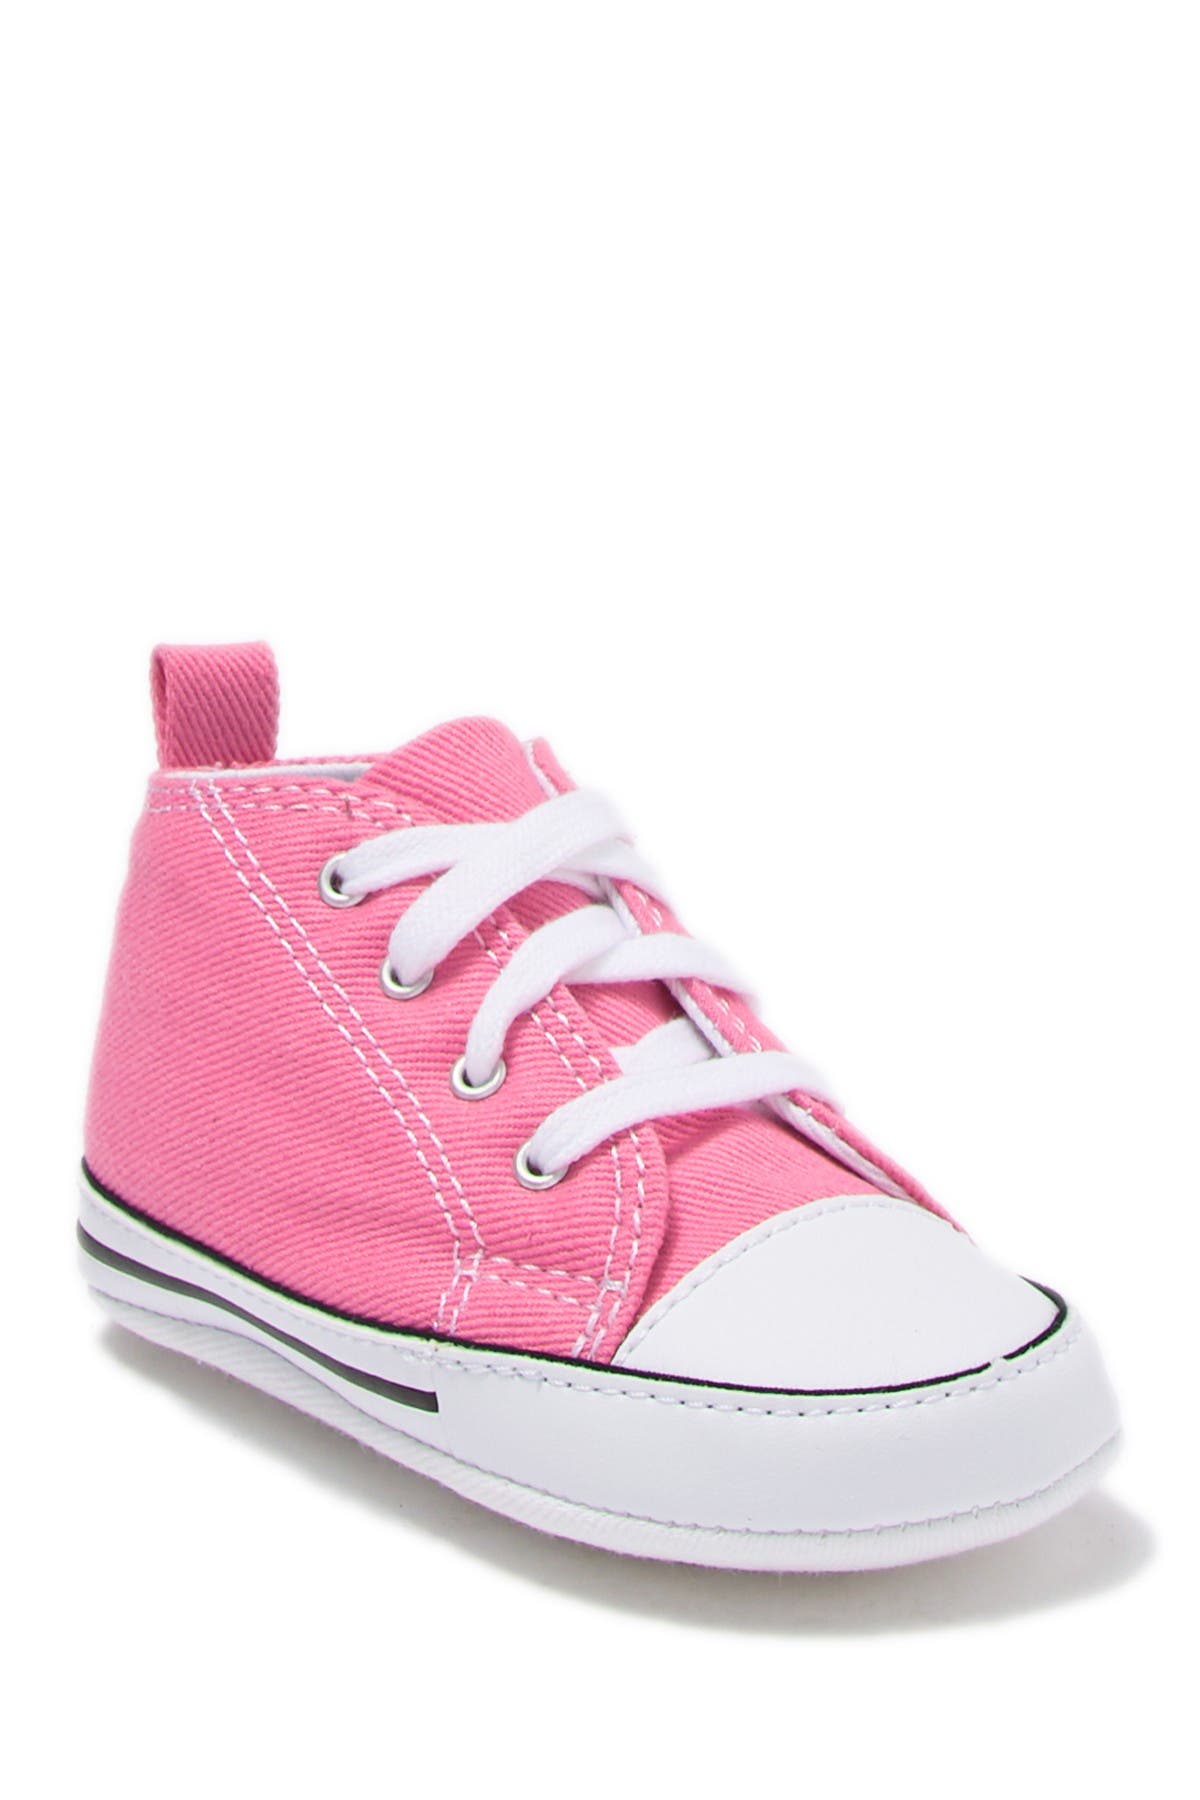 nordstrom pink sneakers